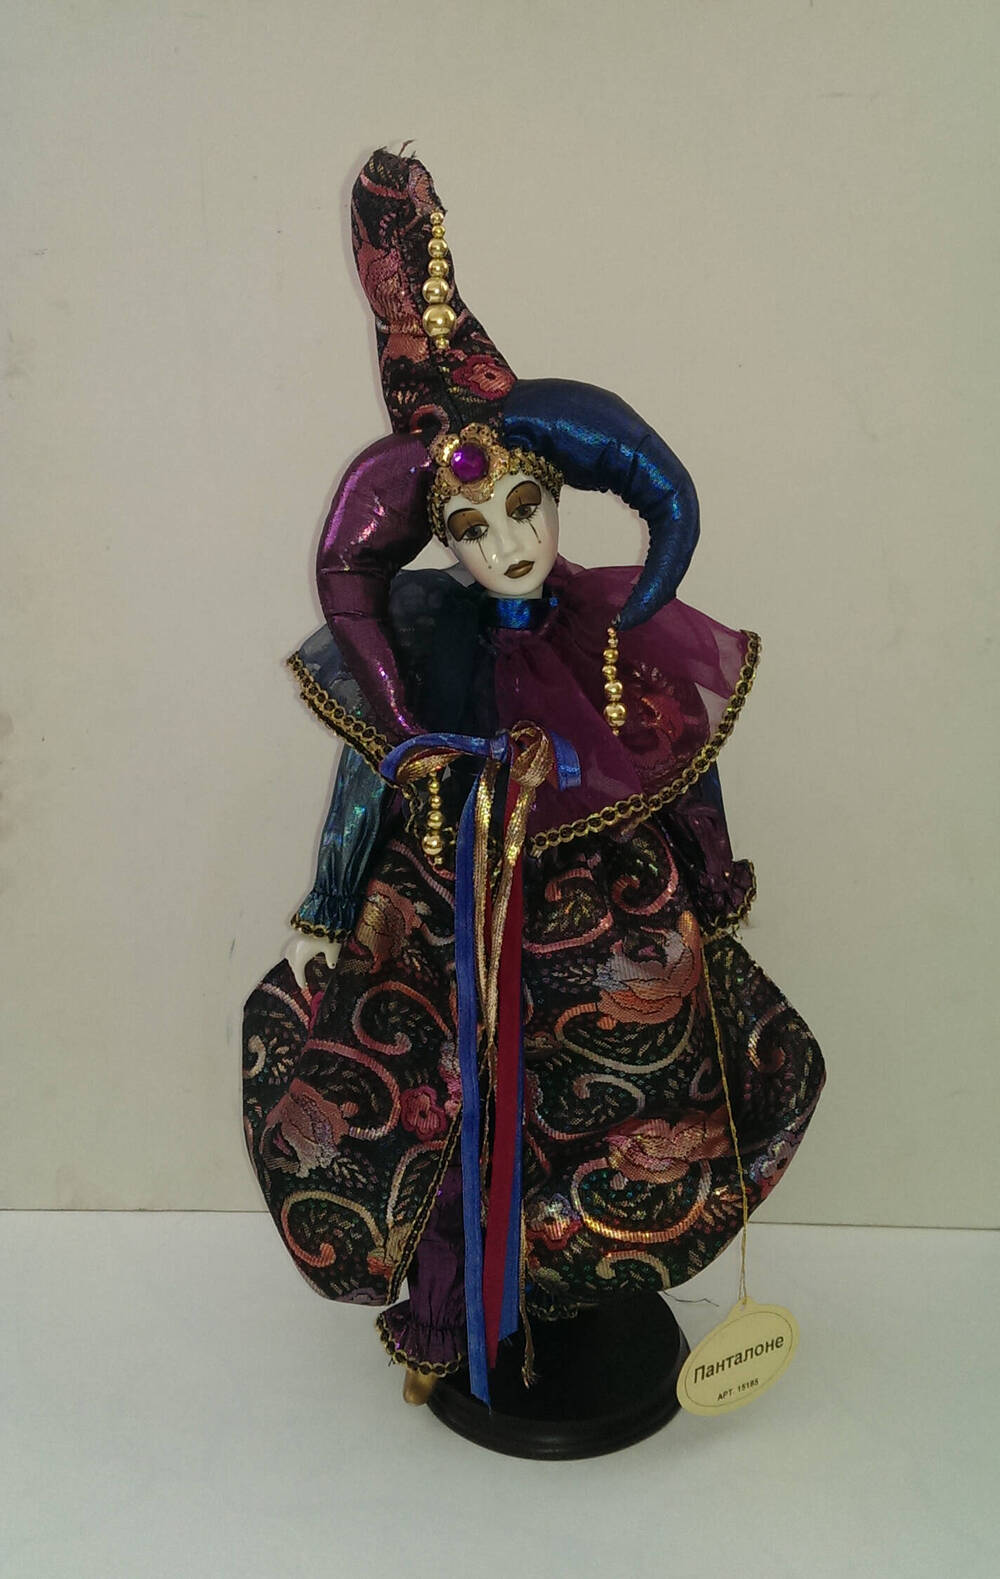 Панталоне. Кукла из Коллекции кукол ручной работы с фарфоровыми элементами «Арлекин» компании «Ремеко», Великобритания (Remeco HARLEQUIN Collection).